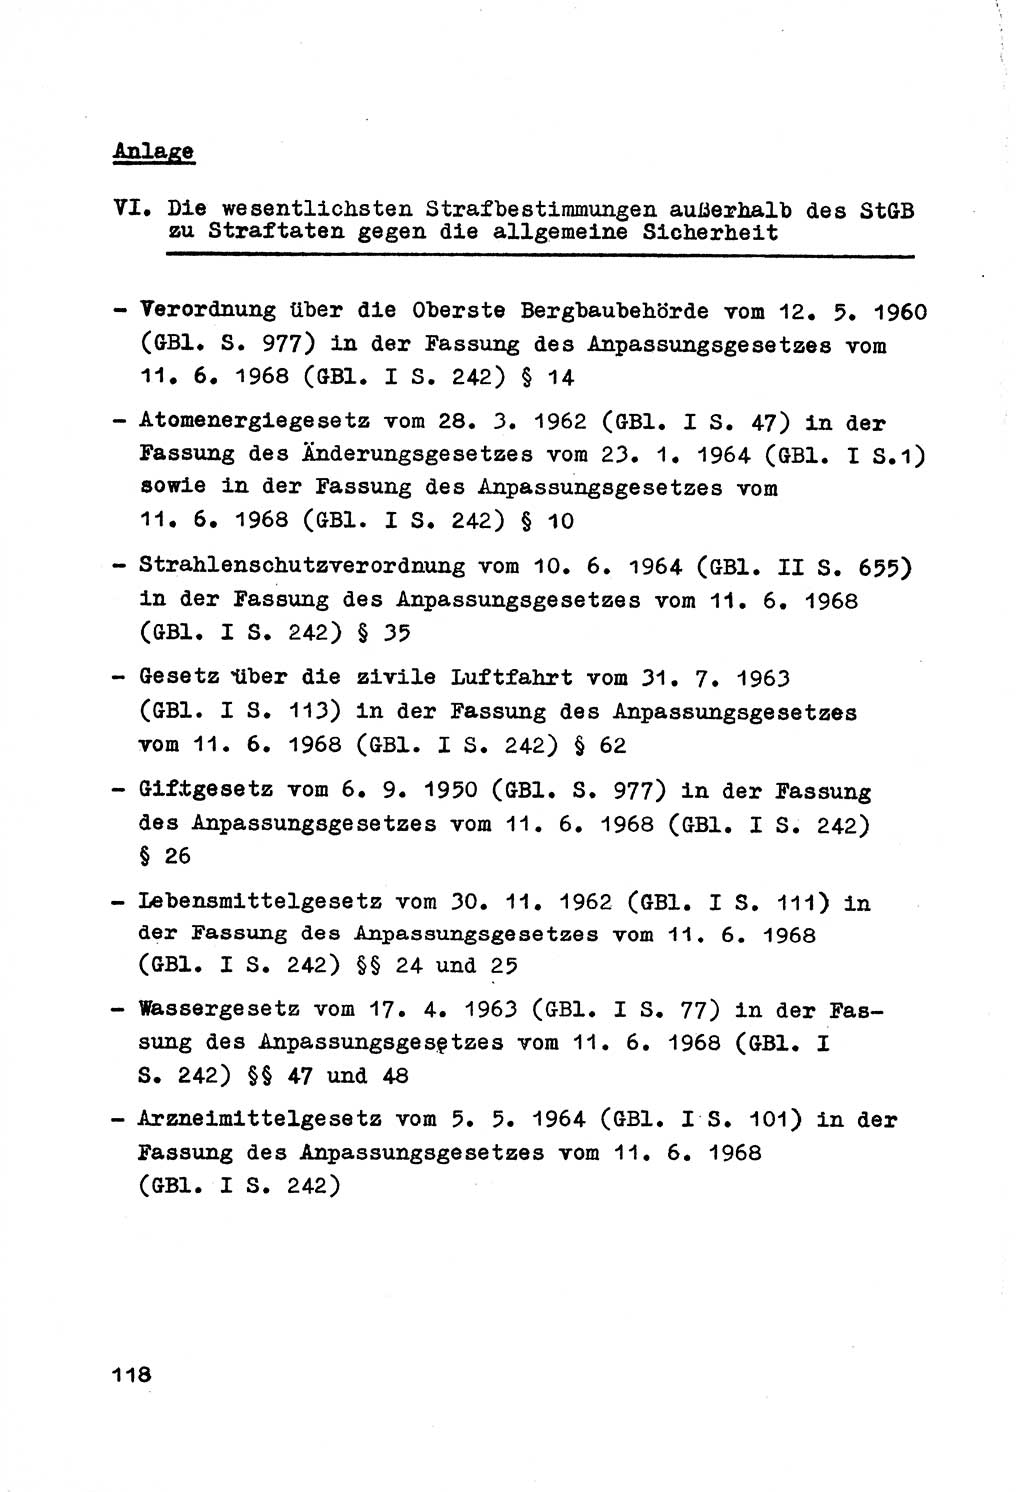 Strafrecht der DDR (Deutsche Demokratische Republik), Besonderer Teil, Lehrmaterial, Heft 7 1970, Seite 118 (Strafr. DDR BT Lehrmat. H. 7 1970, S. 118)